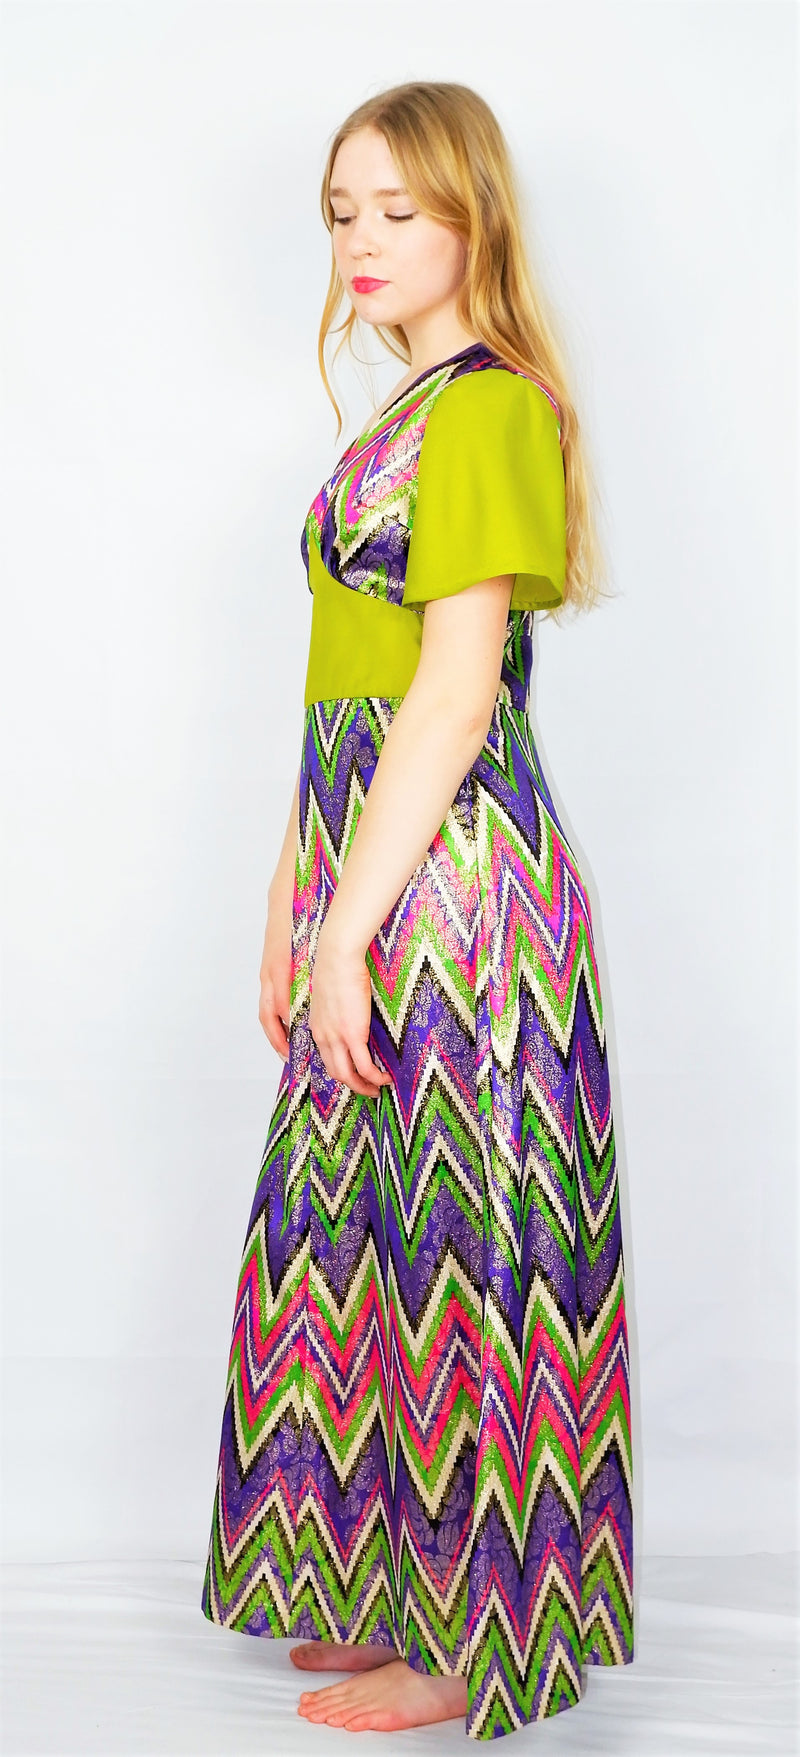 70's Vintage Party Dress - Chartreuse, Pink & Purple Sparkle - Size XS